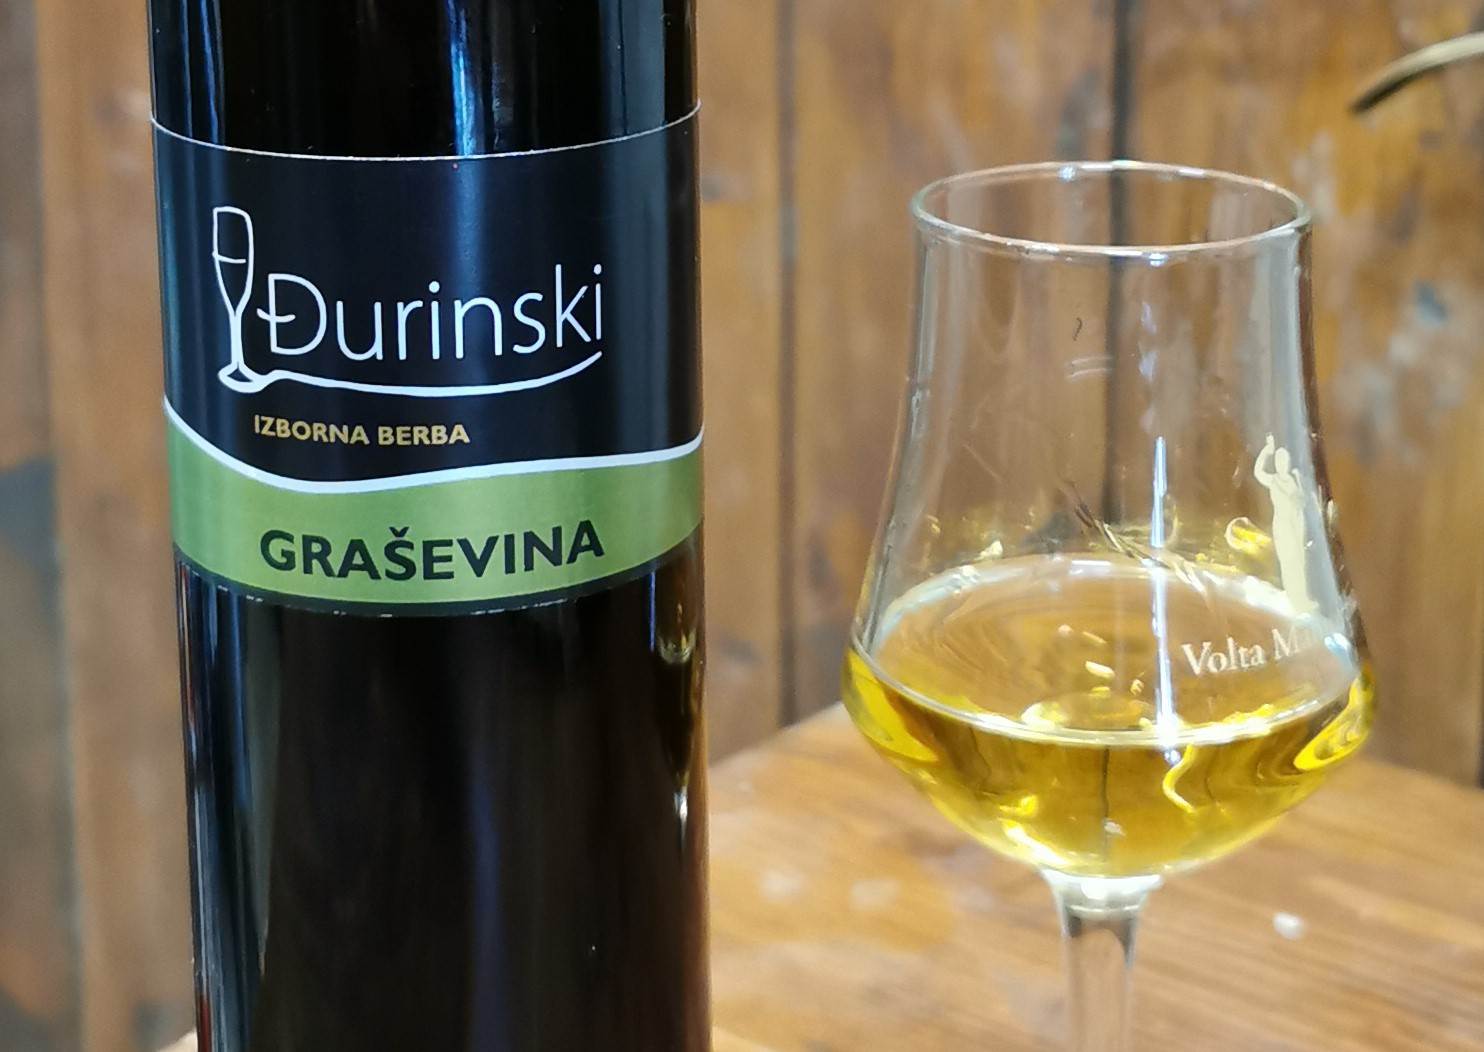 Stjepan Đurinski proslavio se velikim vinima u malim “pakiranjima"